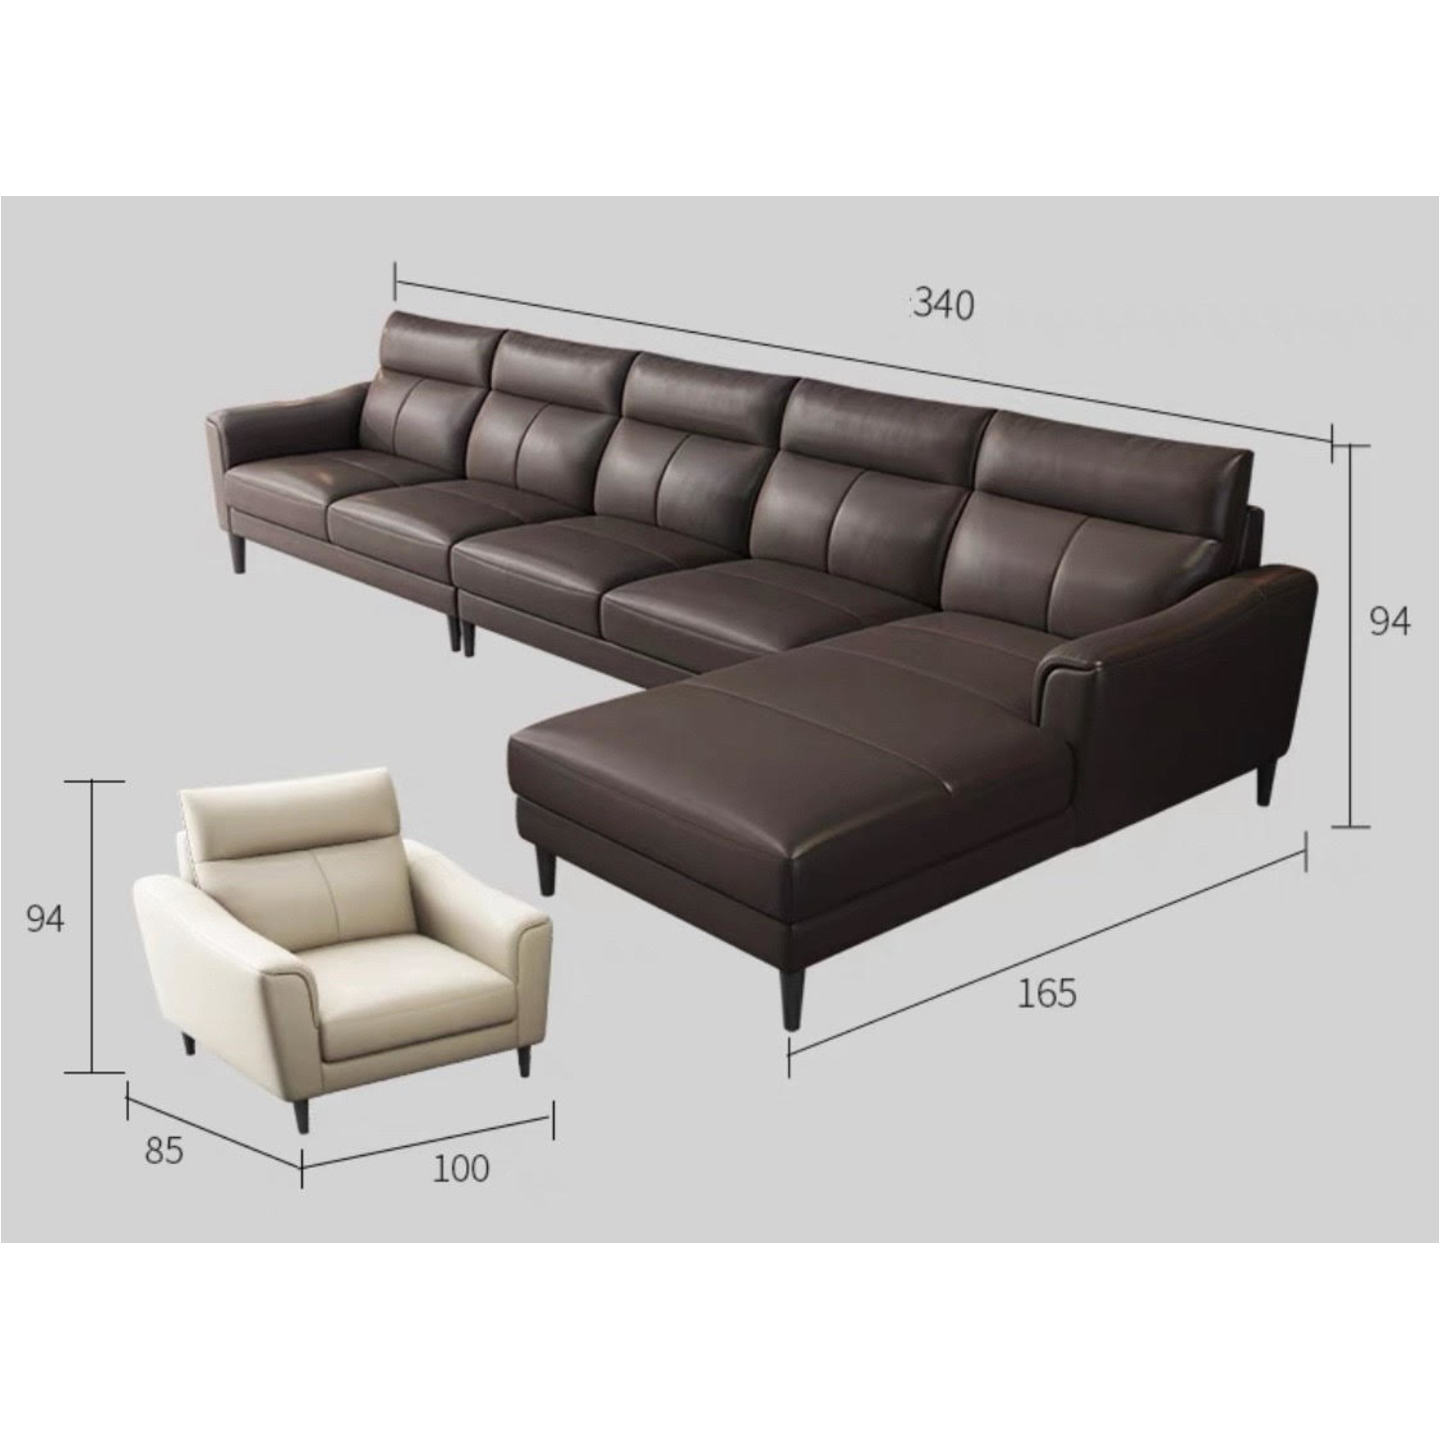 Nappa Premium Italian Sofa Contact Leather - Four + Concubine Seat + Single Seater